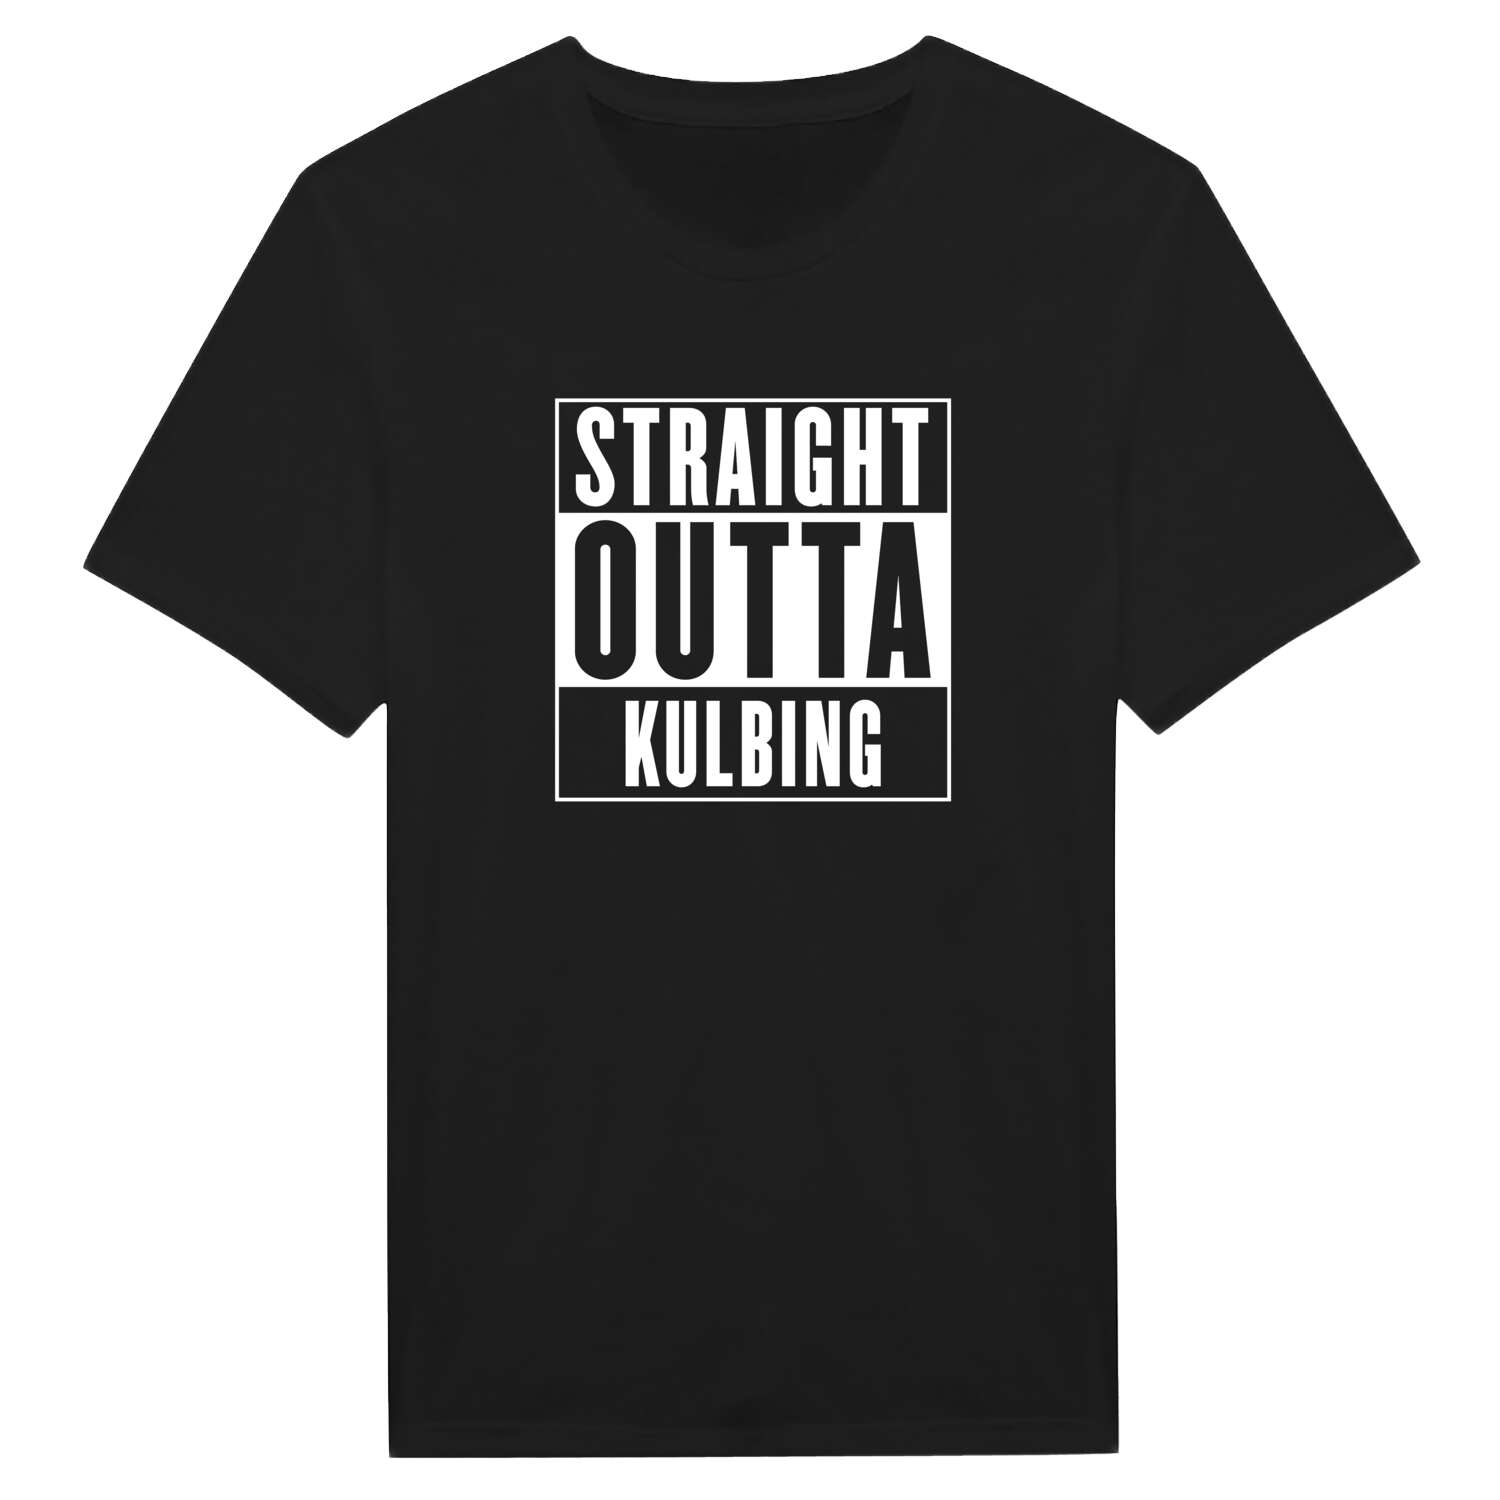 Kulbing T-Shirt »Straight Outta«